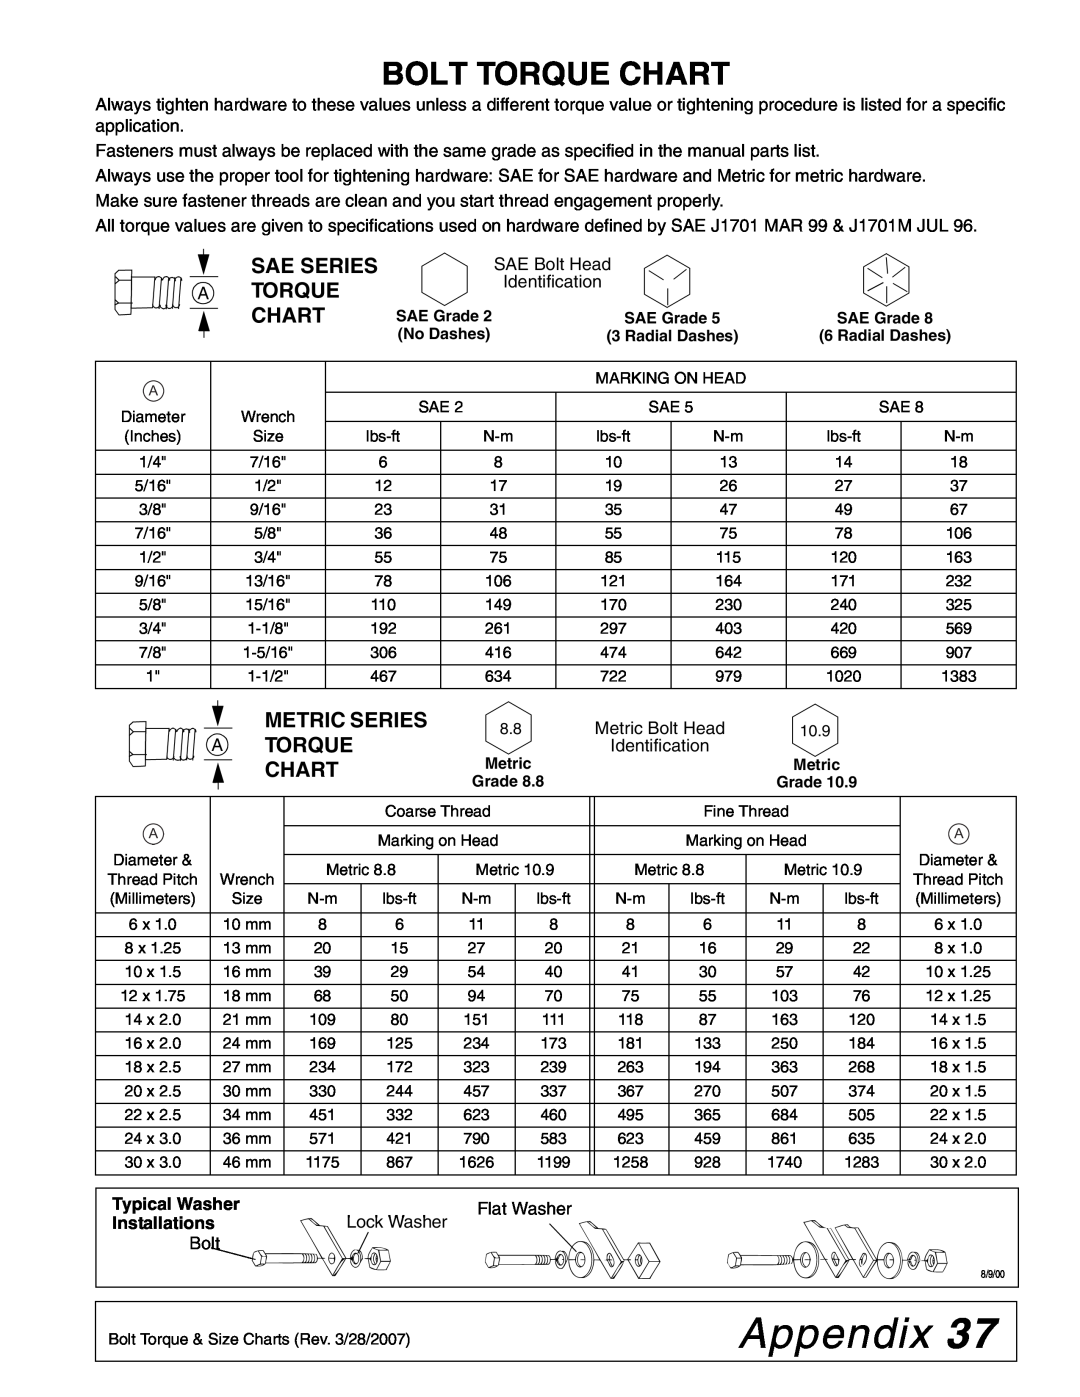 Woods Equipment TCR68, TCR60, TCR74 Appendix, Bolt Torque Chart, Sae Series A Torque Chart, Metric Series A Torque Chart 